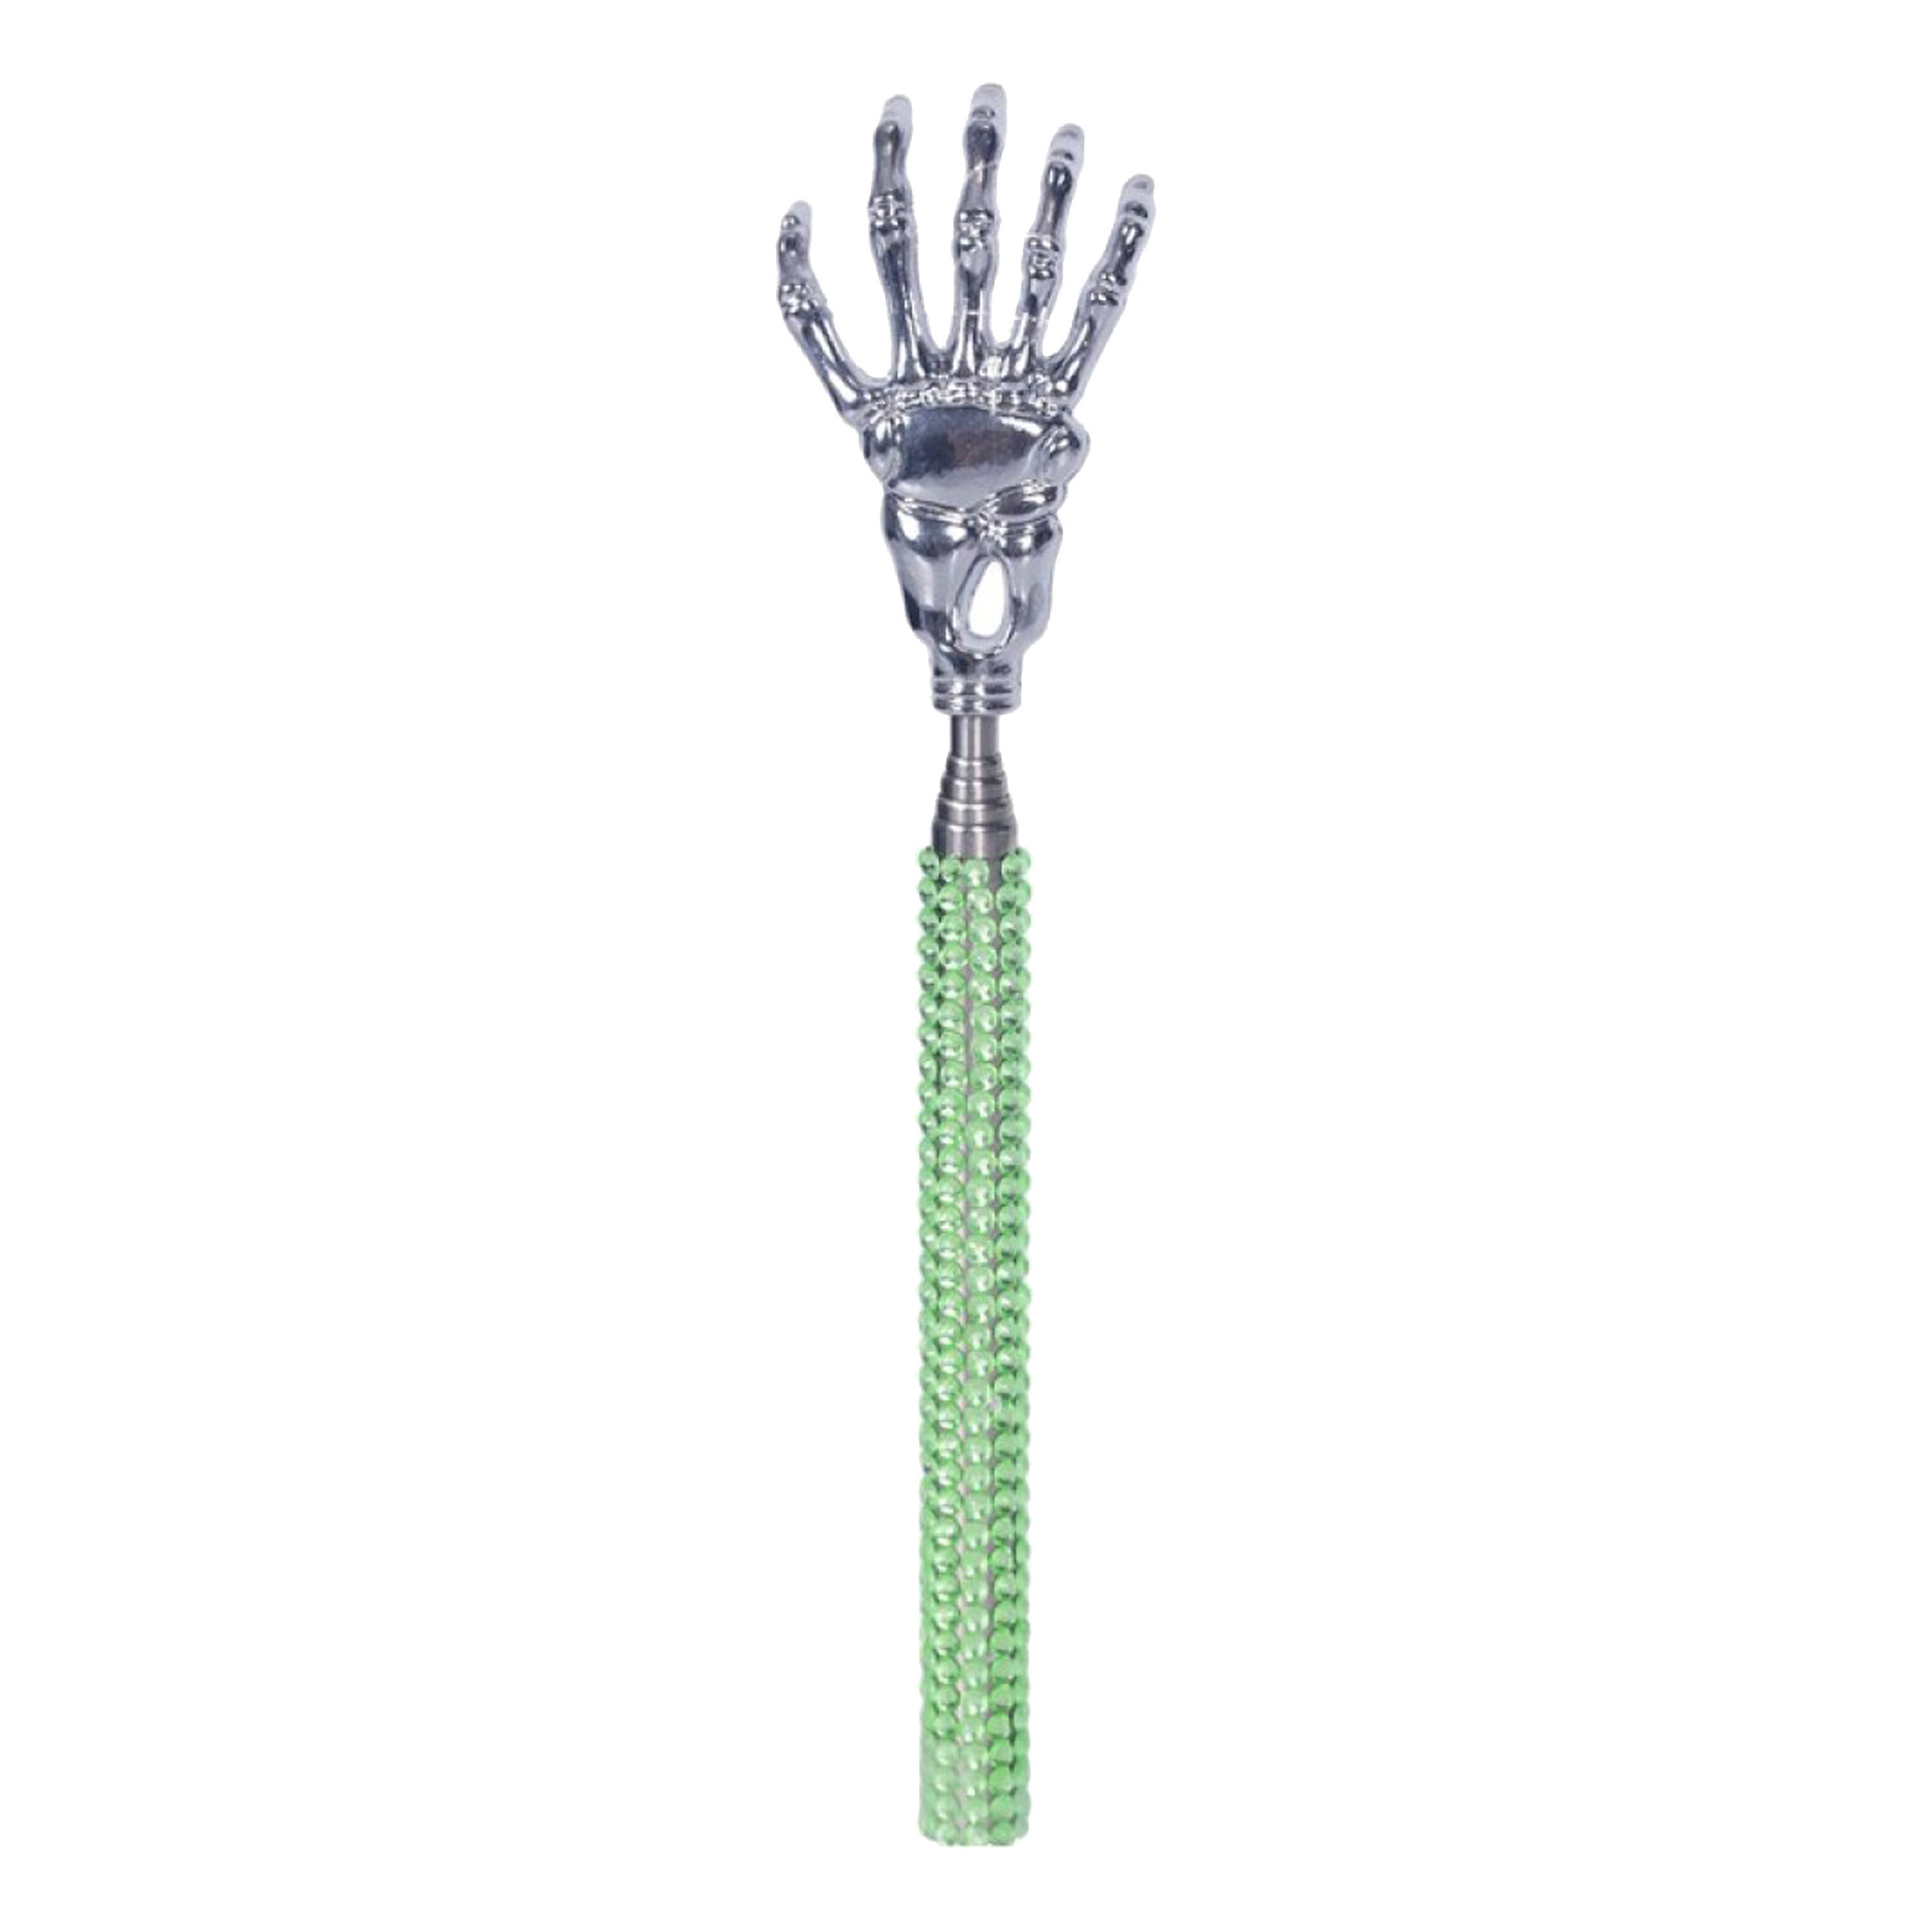 Rugkrabber uitschuifbaar groen skelet handje diamanten massage krabber